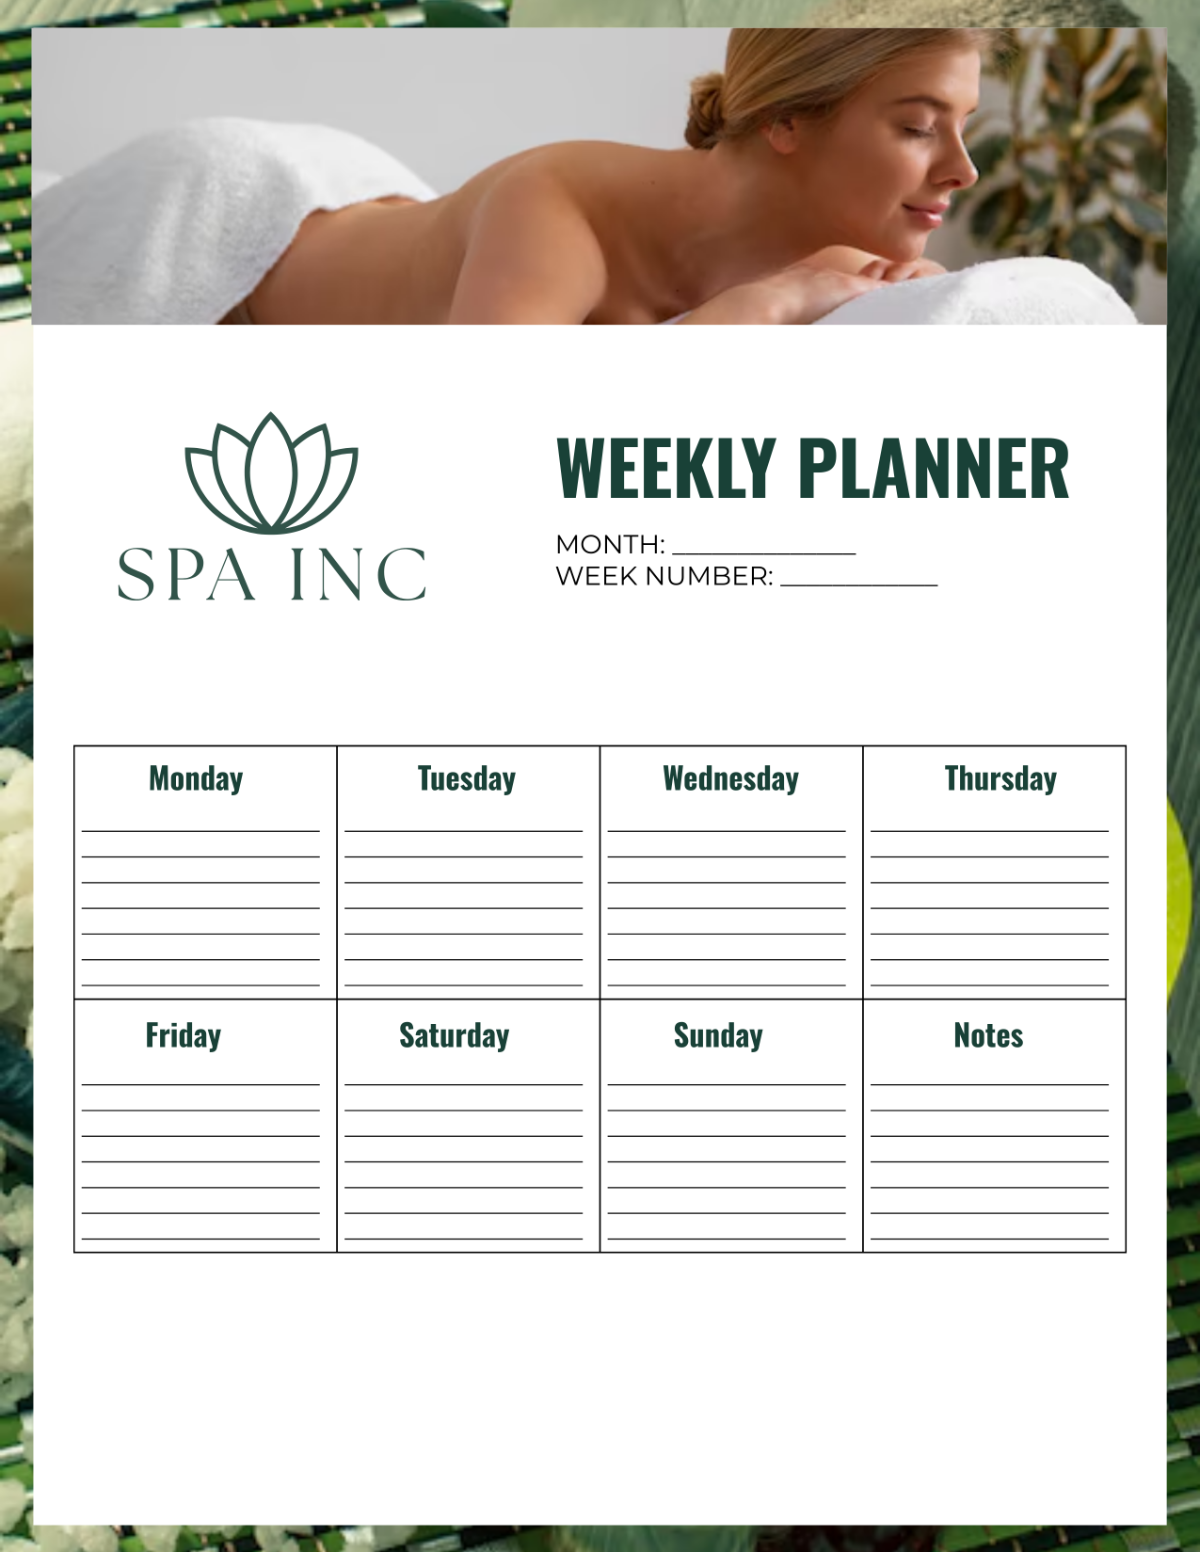 Spa Weekly Planner